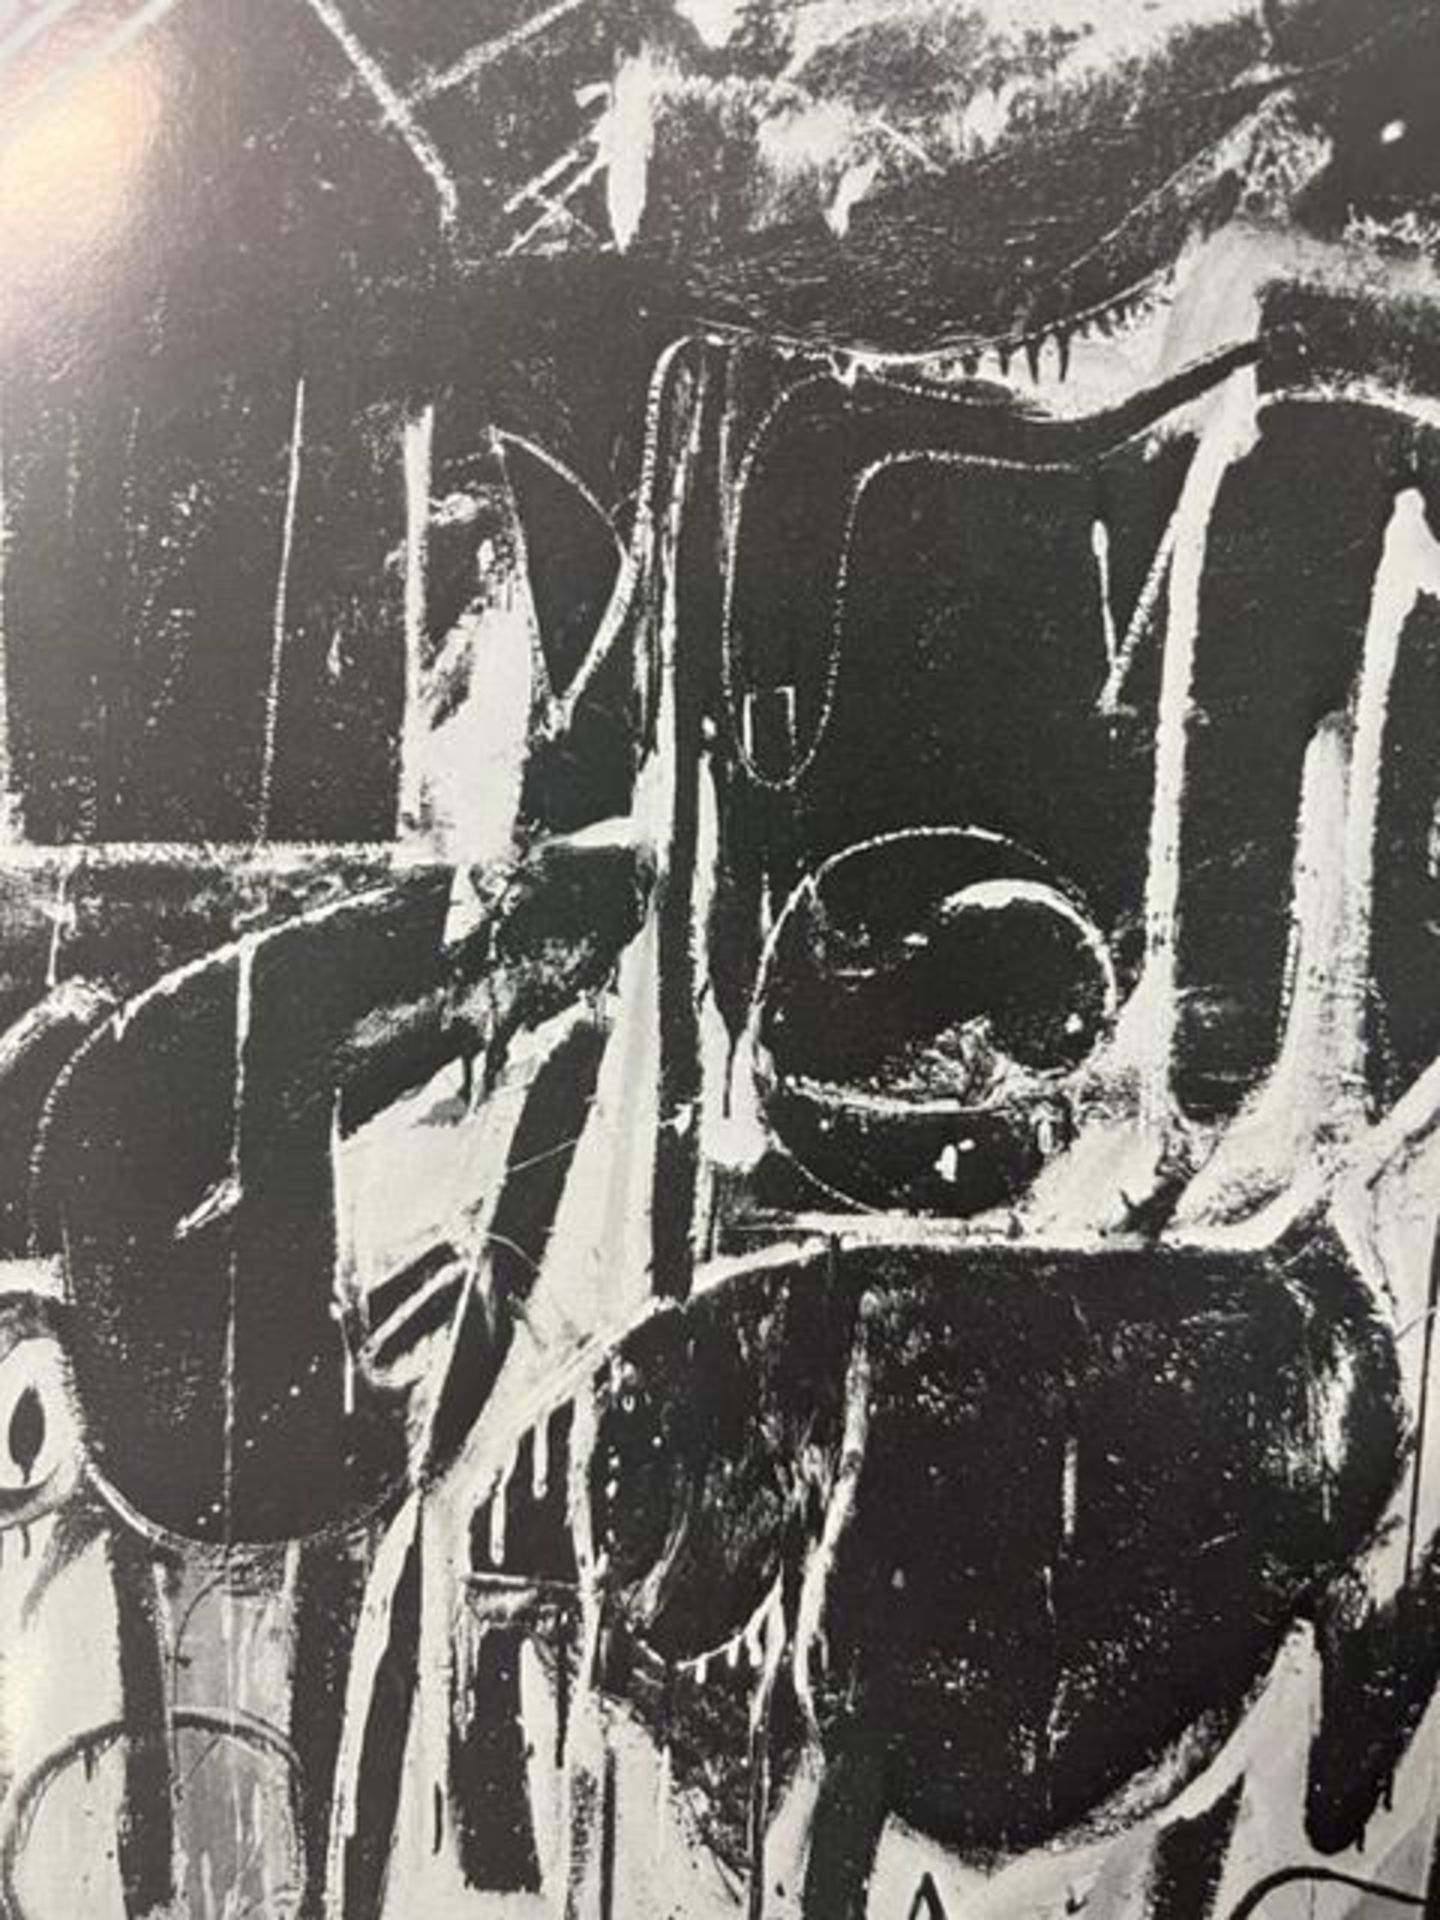 Willem de Kooning "Black Friday" Print. - Bild 3 aus 6